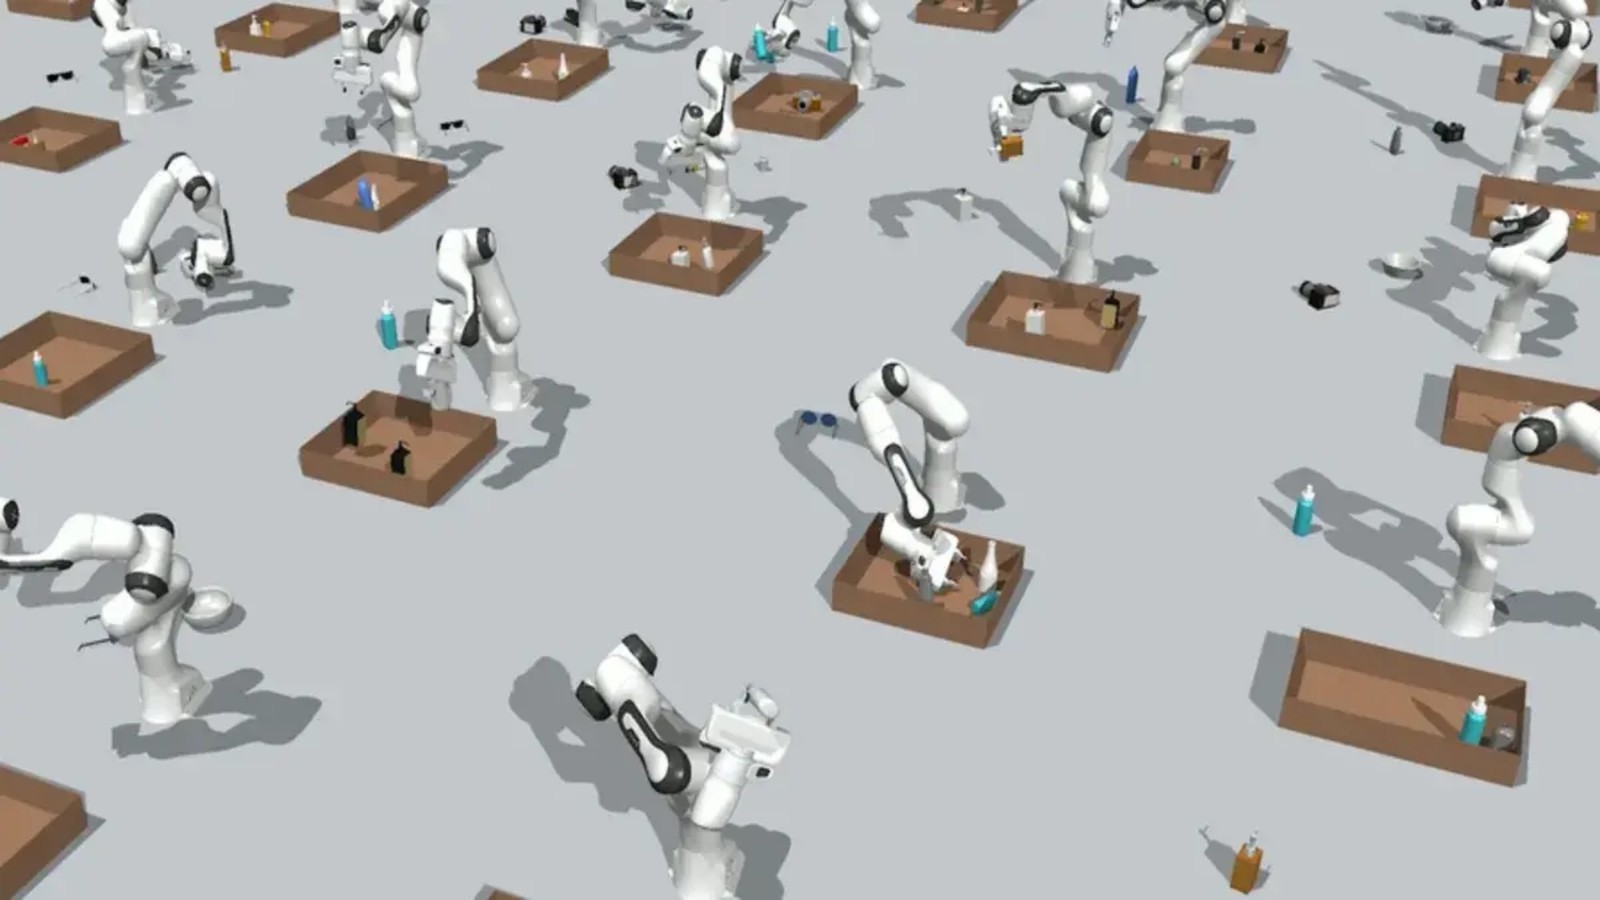 Sztuczna inteligencja z MIT zaczęła pomagać robotowi wykonywać wiele zadań